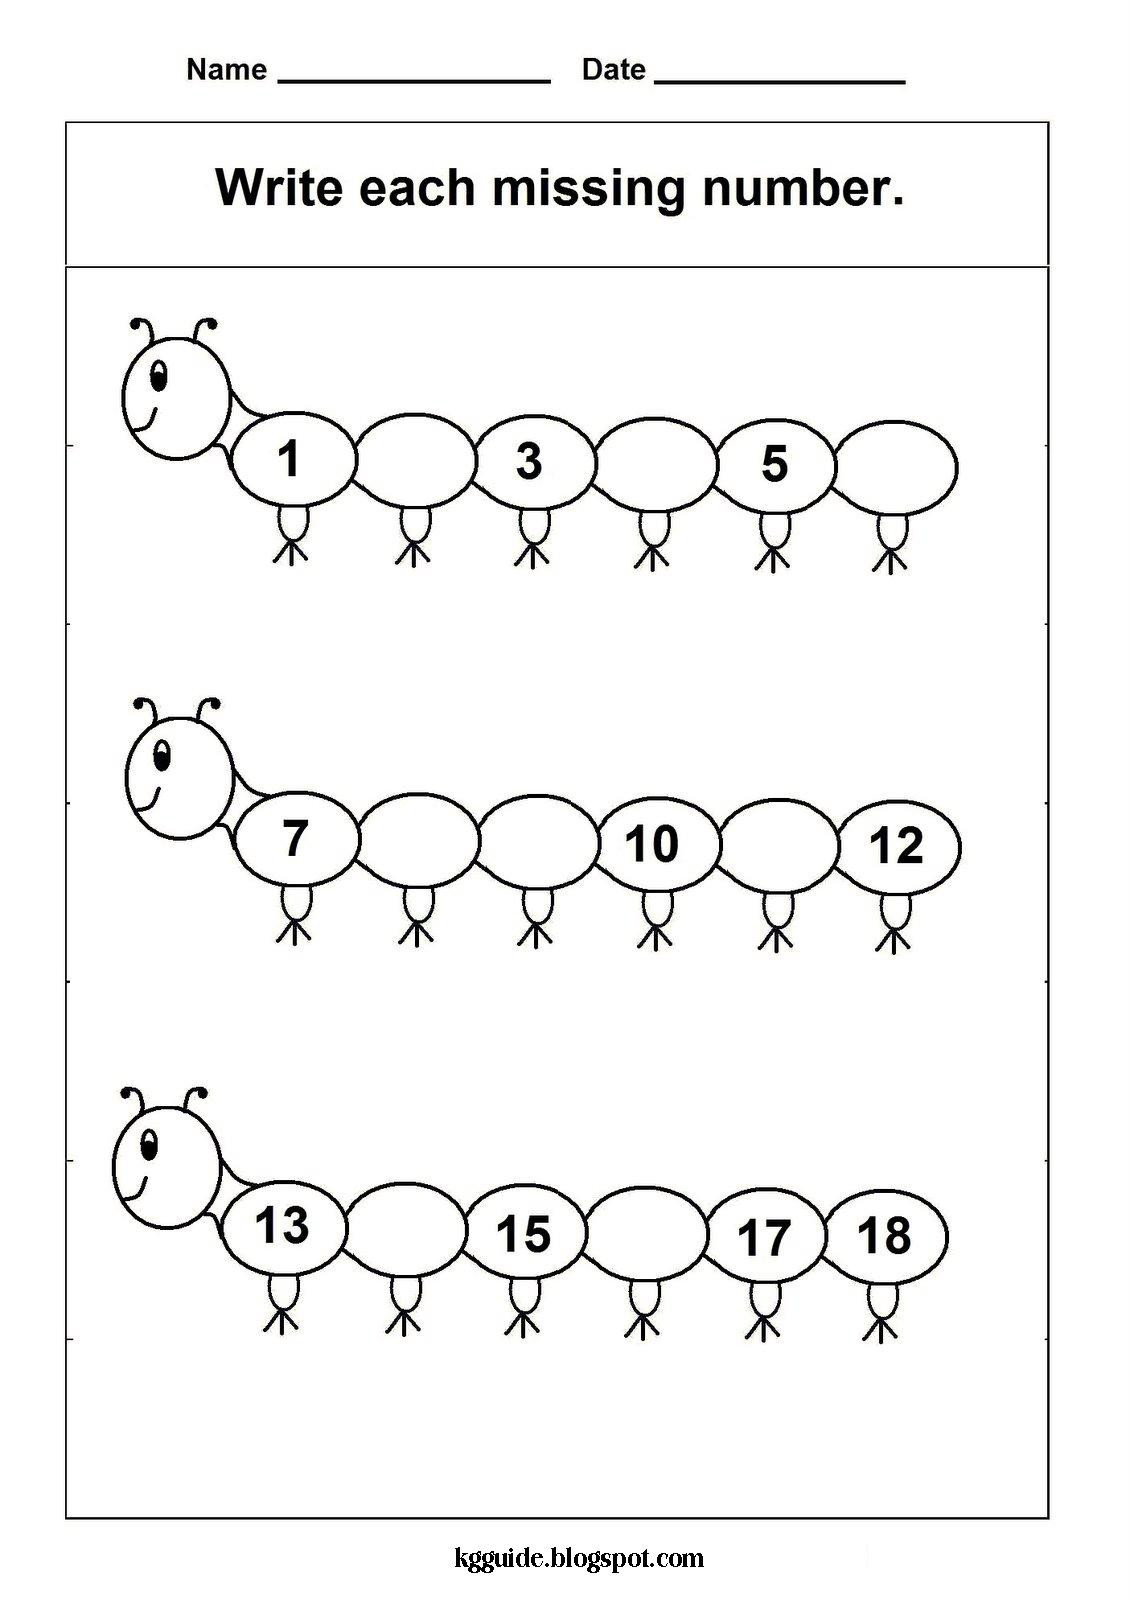 Kindergarten Number Line Worksheets Missing Number Worksheet New 330 Missing Numbers On Number